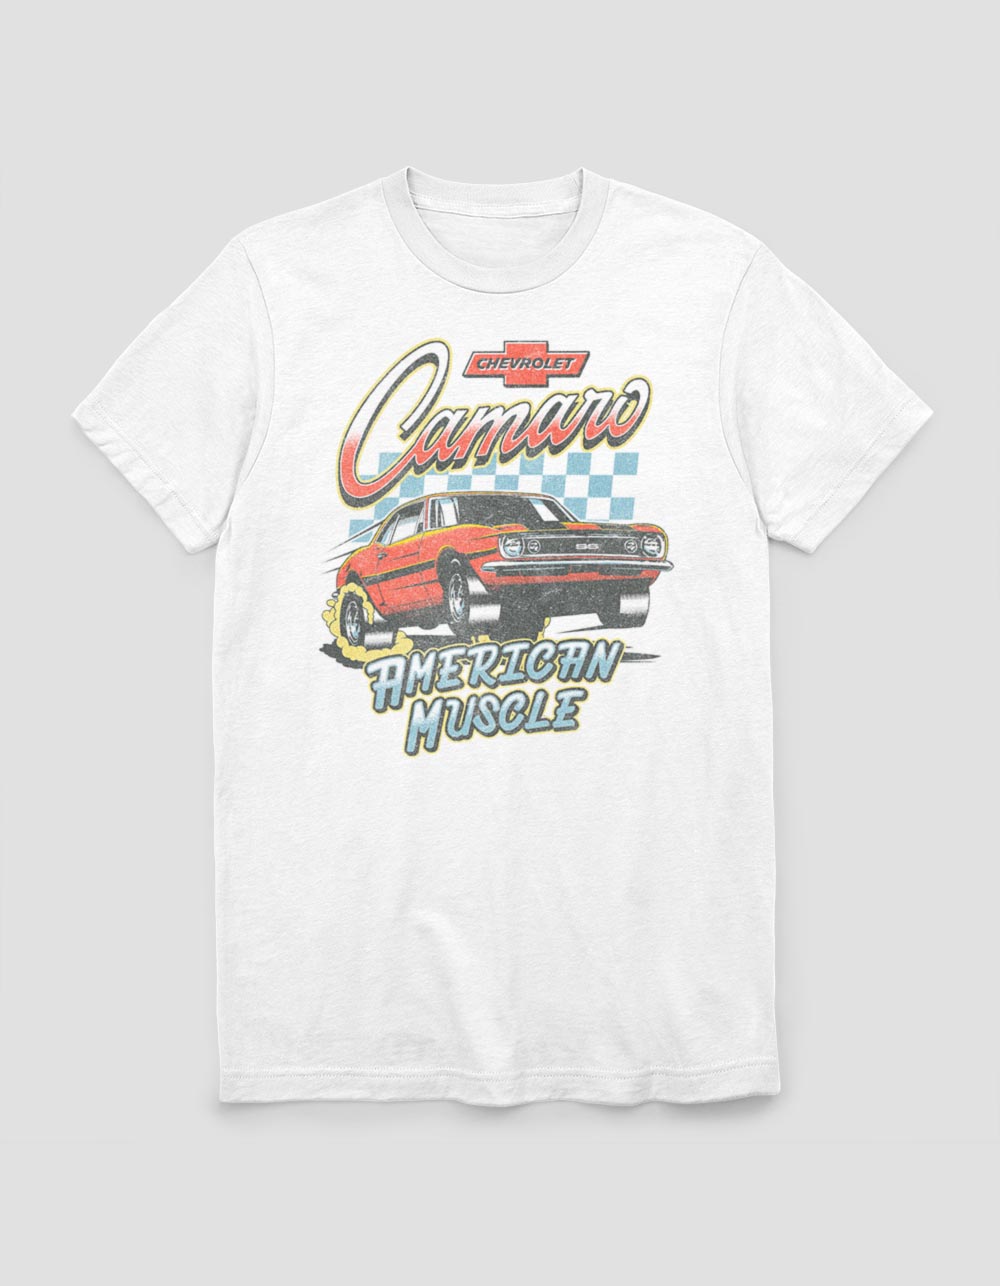 GM Chevrolet Performance Men's Official Licensed Logo Tee T-Shirt